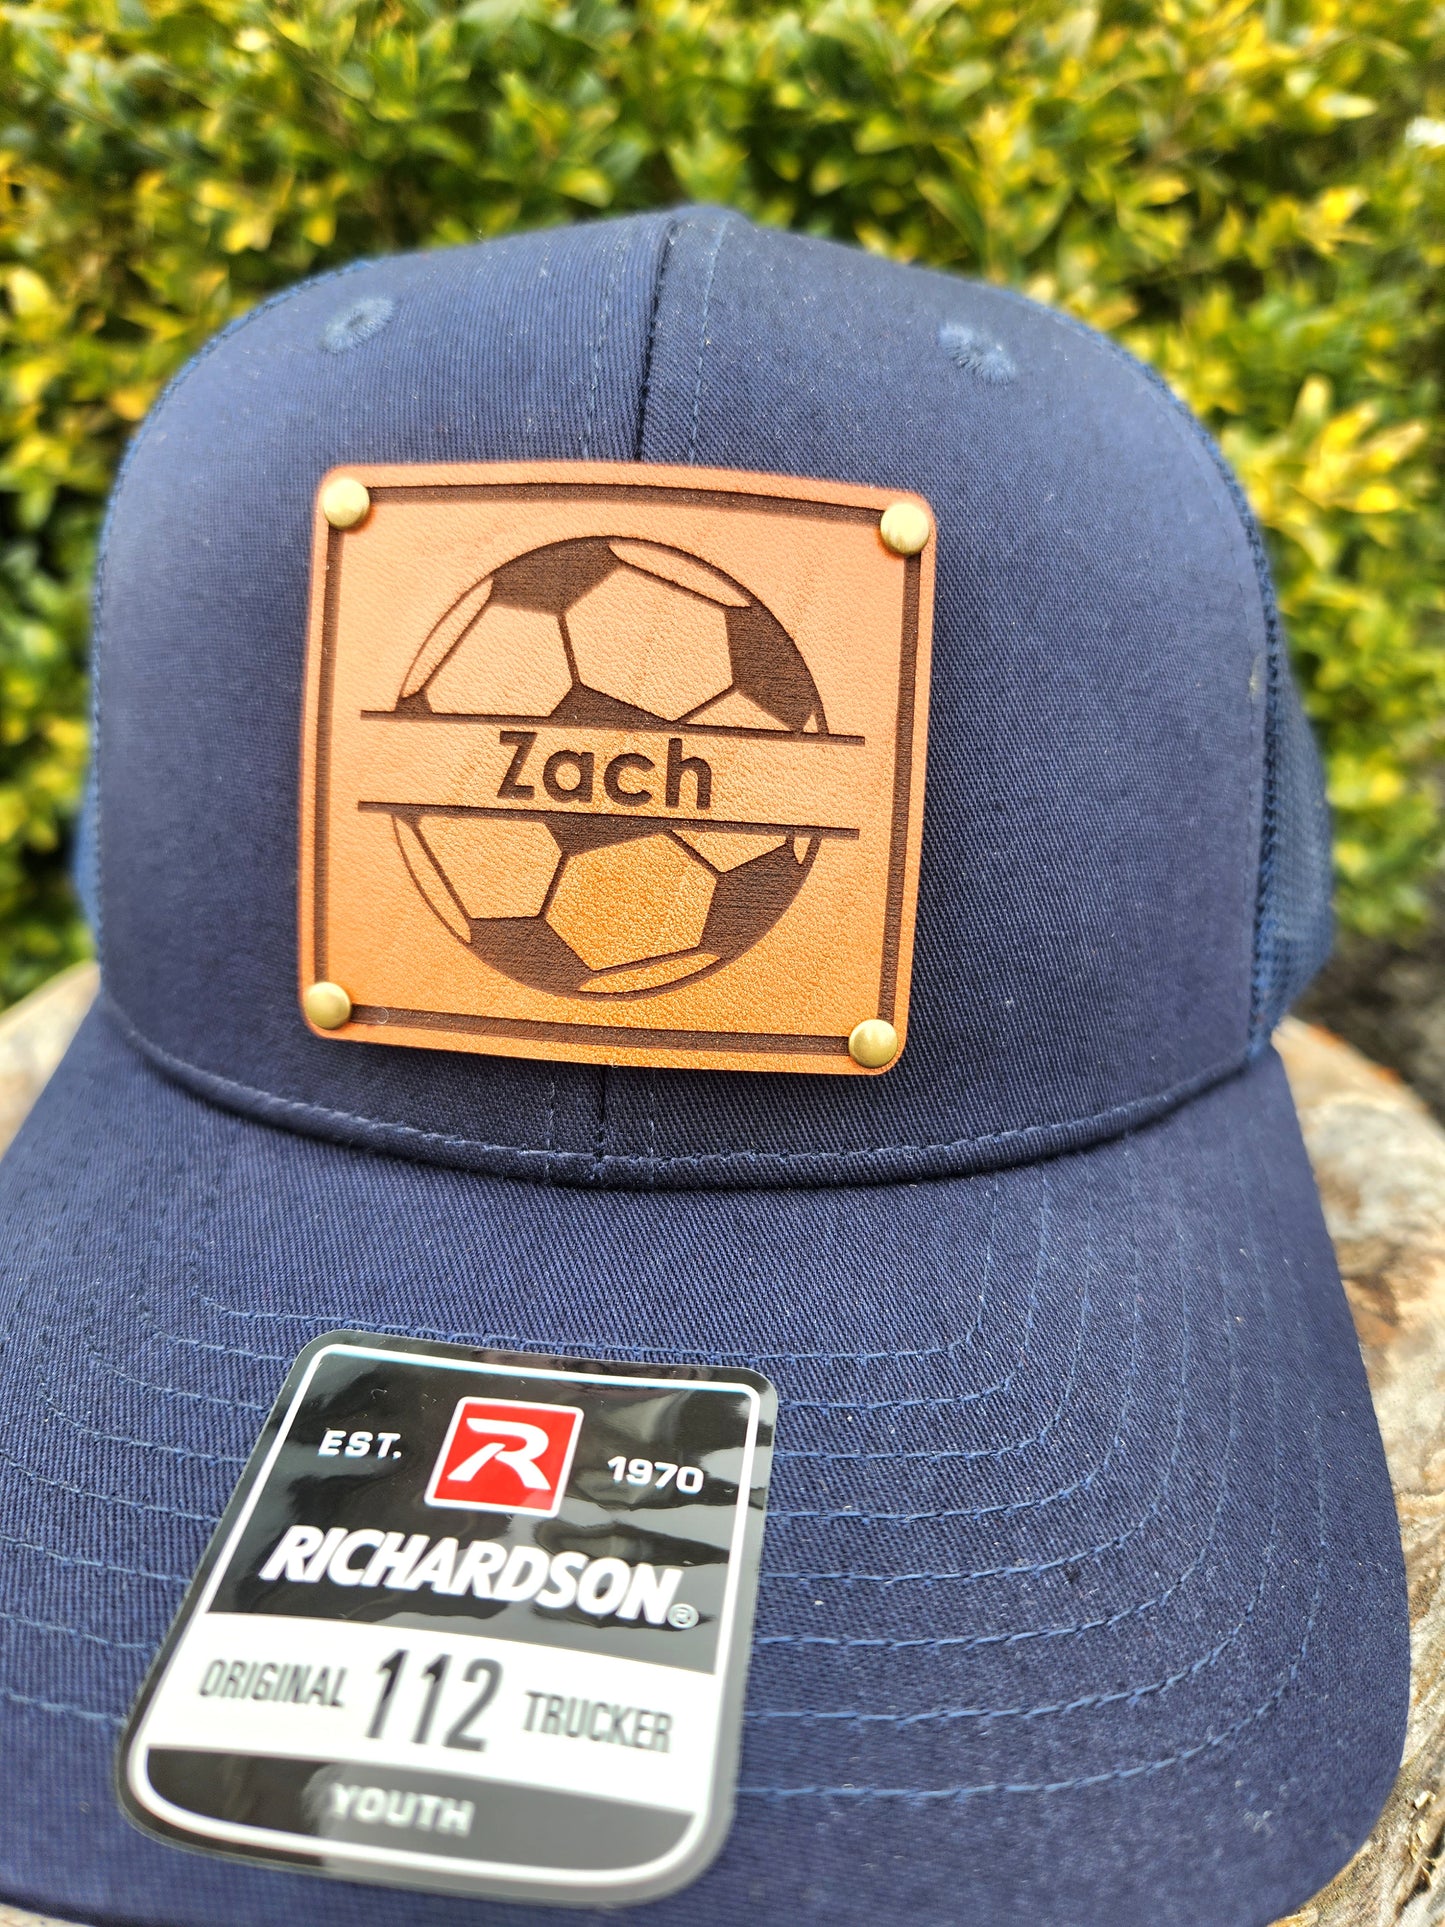 Kids Soccer name hat